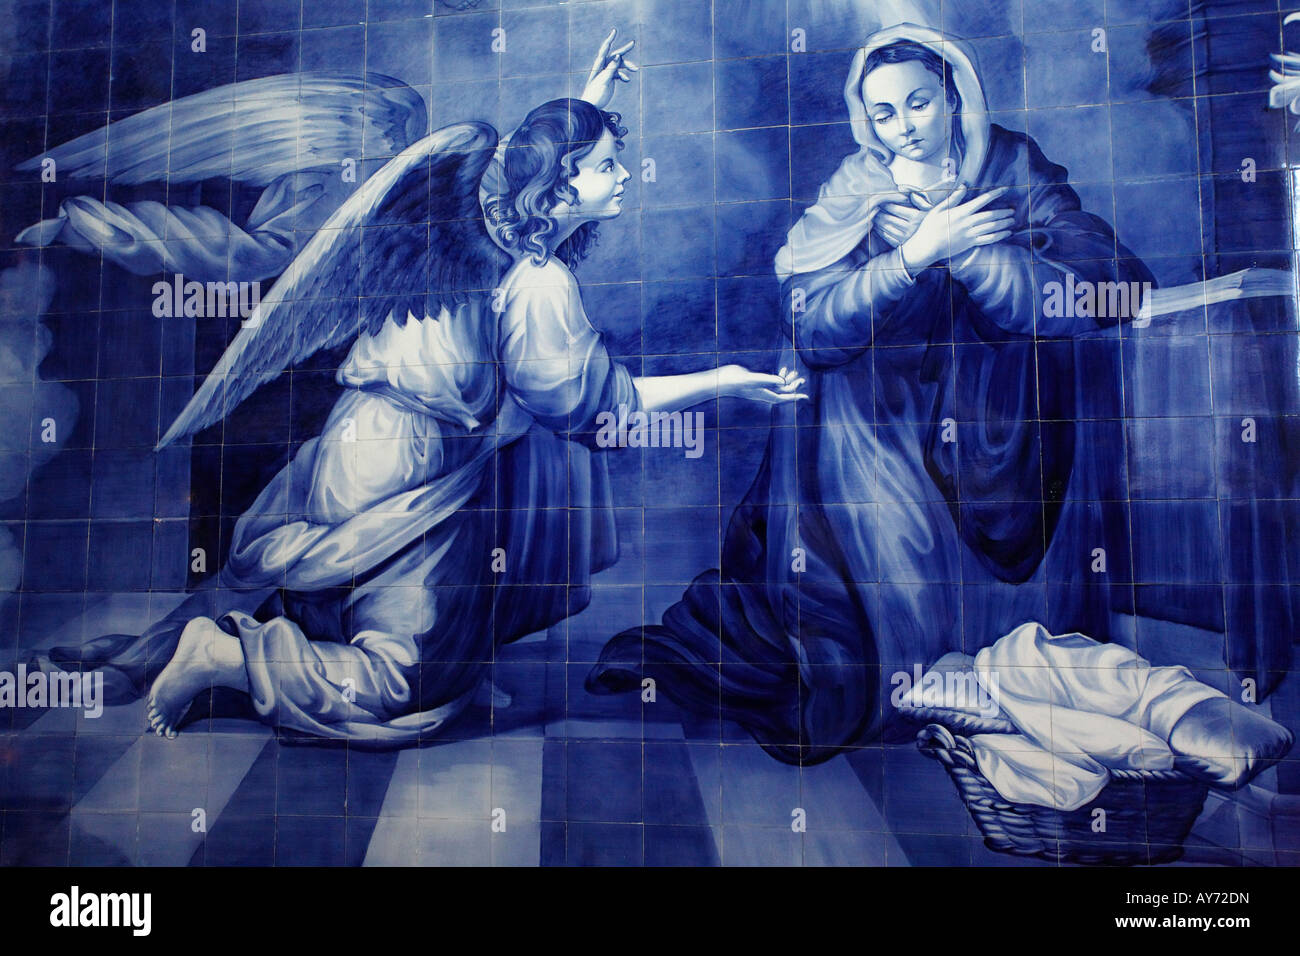 Groupe d'azulejo carreaux bleu portugais montrant l'Archange Gabriel et la Vierge Marie au cours de l'Annonciation Banque D'Images